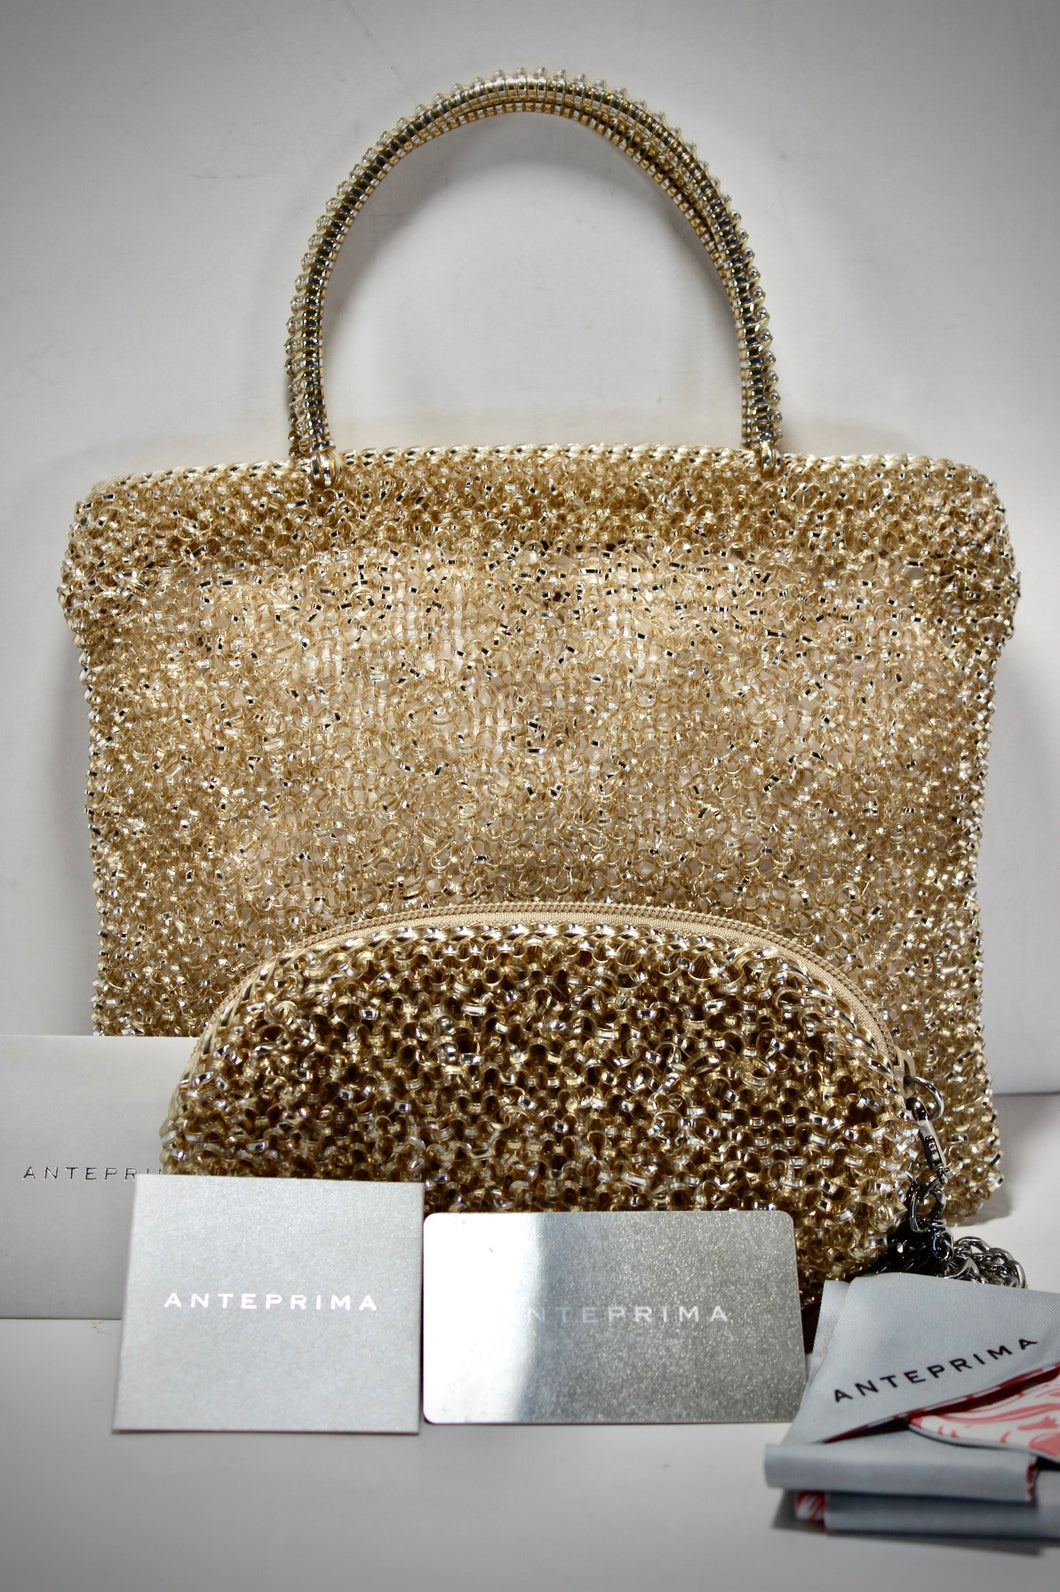 ANTEPRIMA Wirebag Gold Silver Zip Top Tote Handbag with Wallet